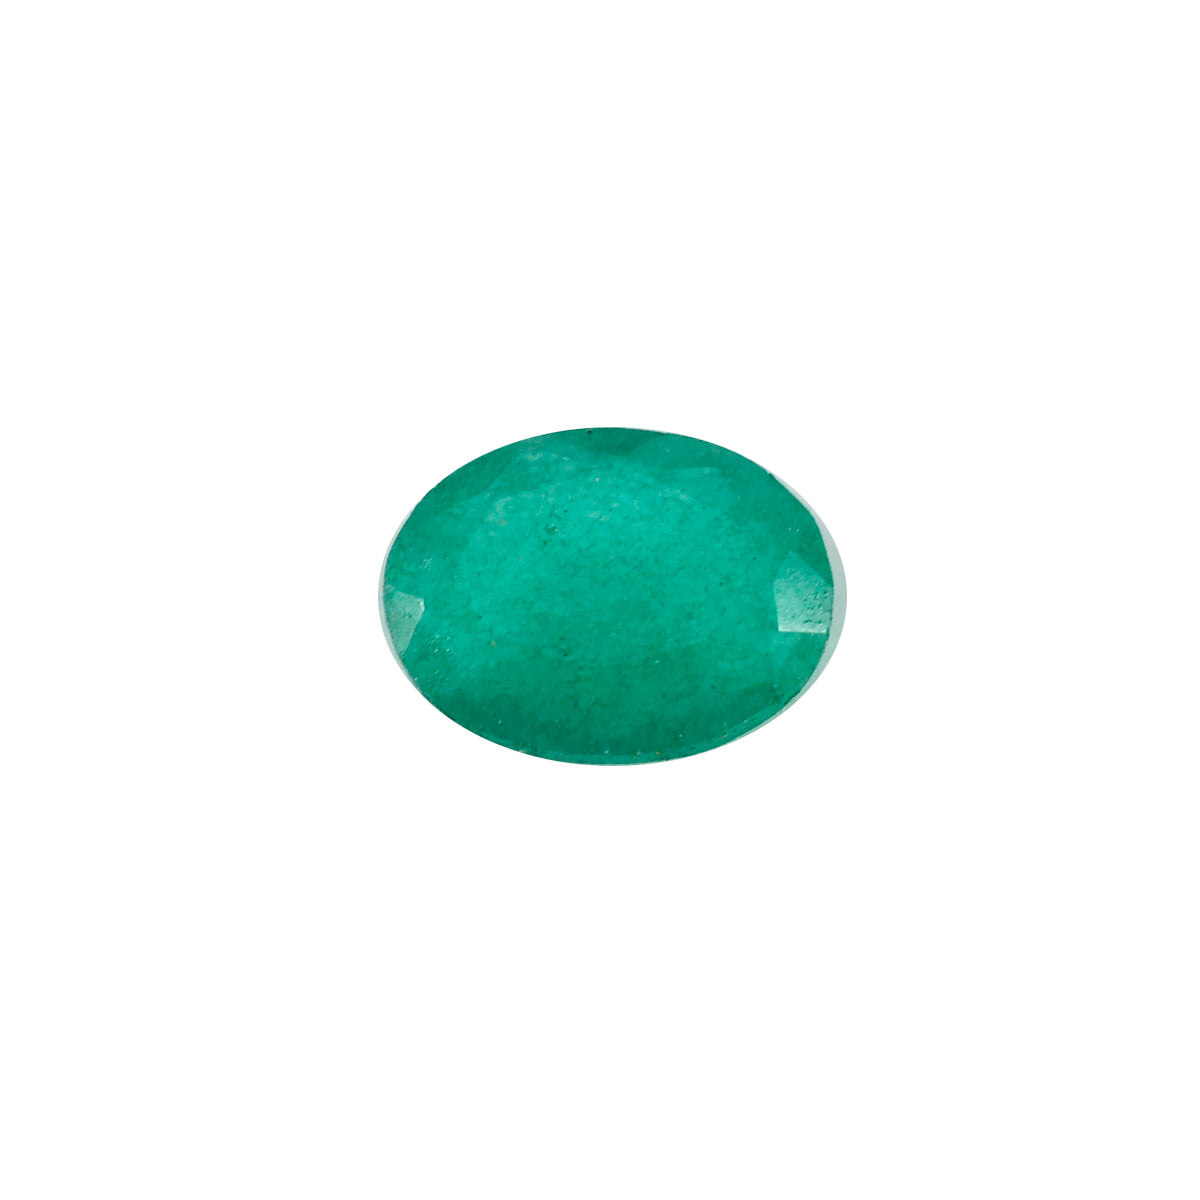 Riyogems 1 pieza jaspe verde Natural facetado 12x16mm forma ovalada piedra suelta de calidad impresionante